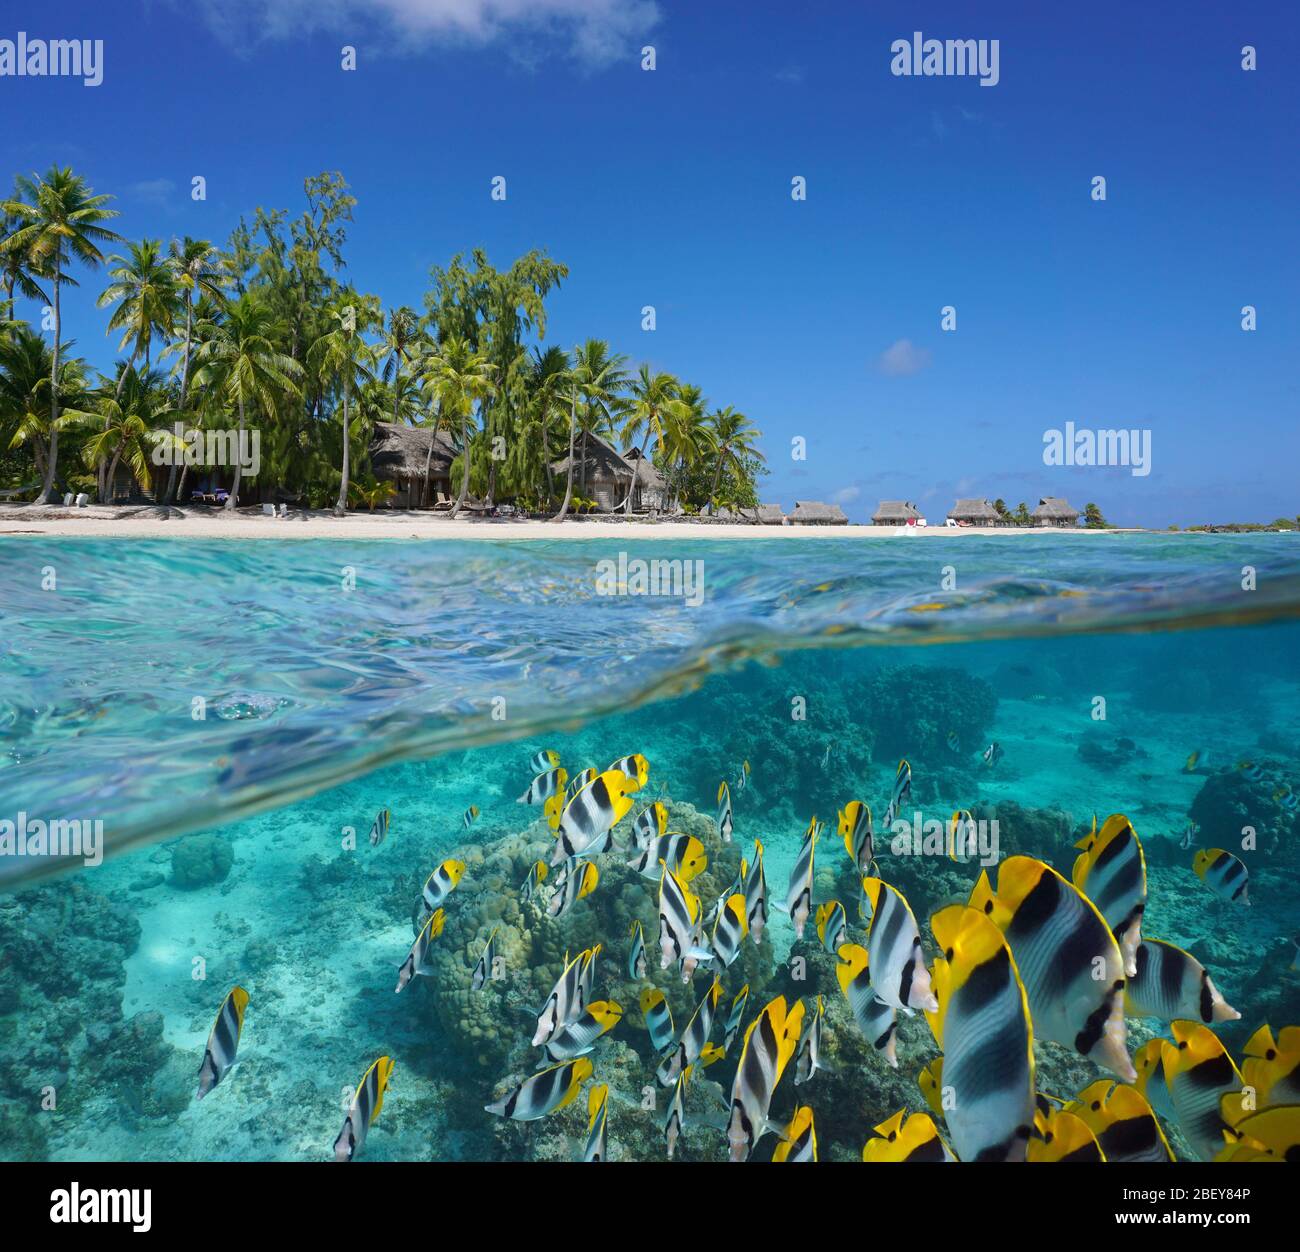 Una scuola di pesce subacqueo (pesce farfalla) di fronte ad un'isola tropicale con un resort, Polinesia Francese, atollo di Tikehau, Oceano Pacifico, vista divisa Foto Stock